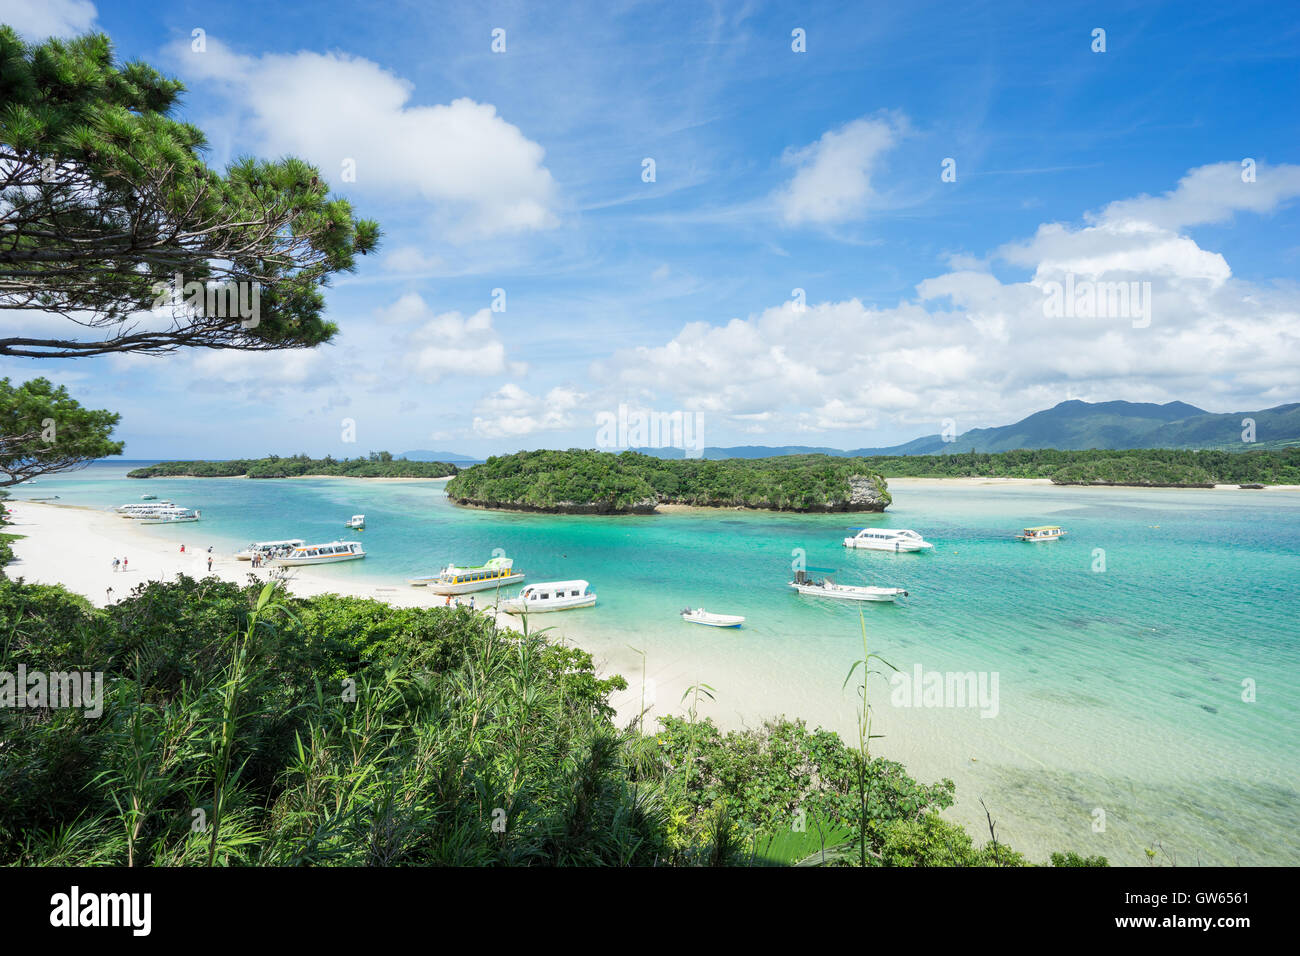 Paradis tropical de l'Île Ishigaki, groupe d'Îles Yaeyama, Okinawa, Japon Banque D'Images